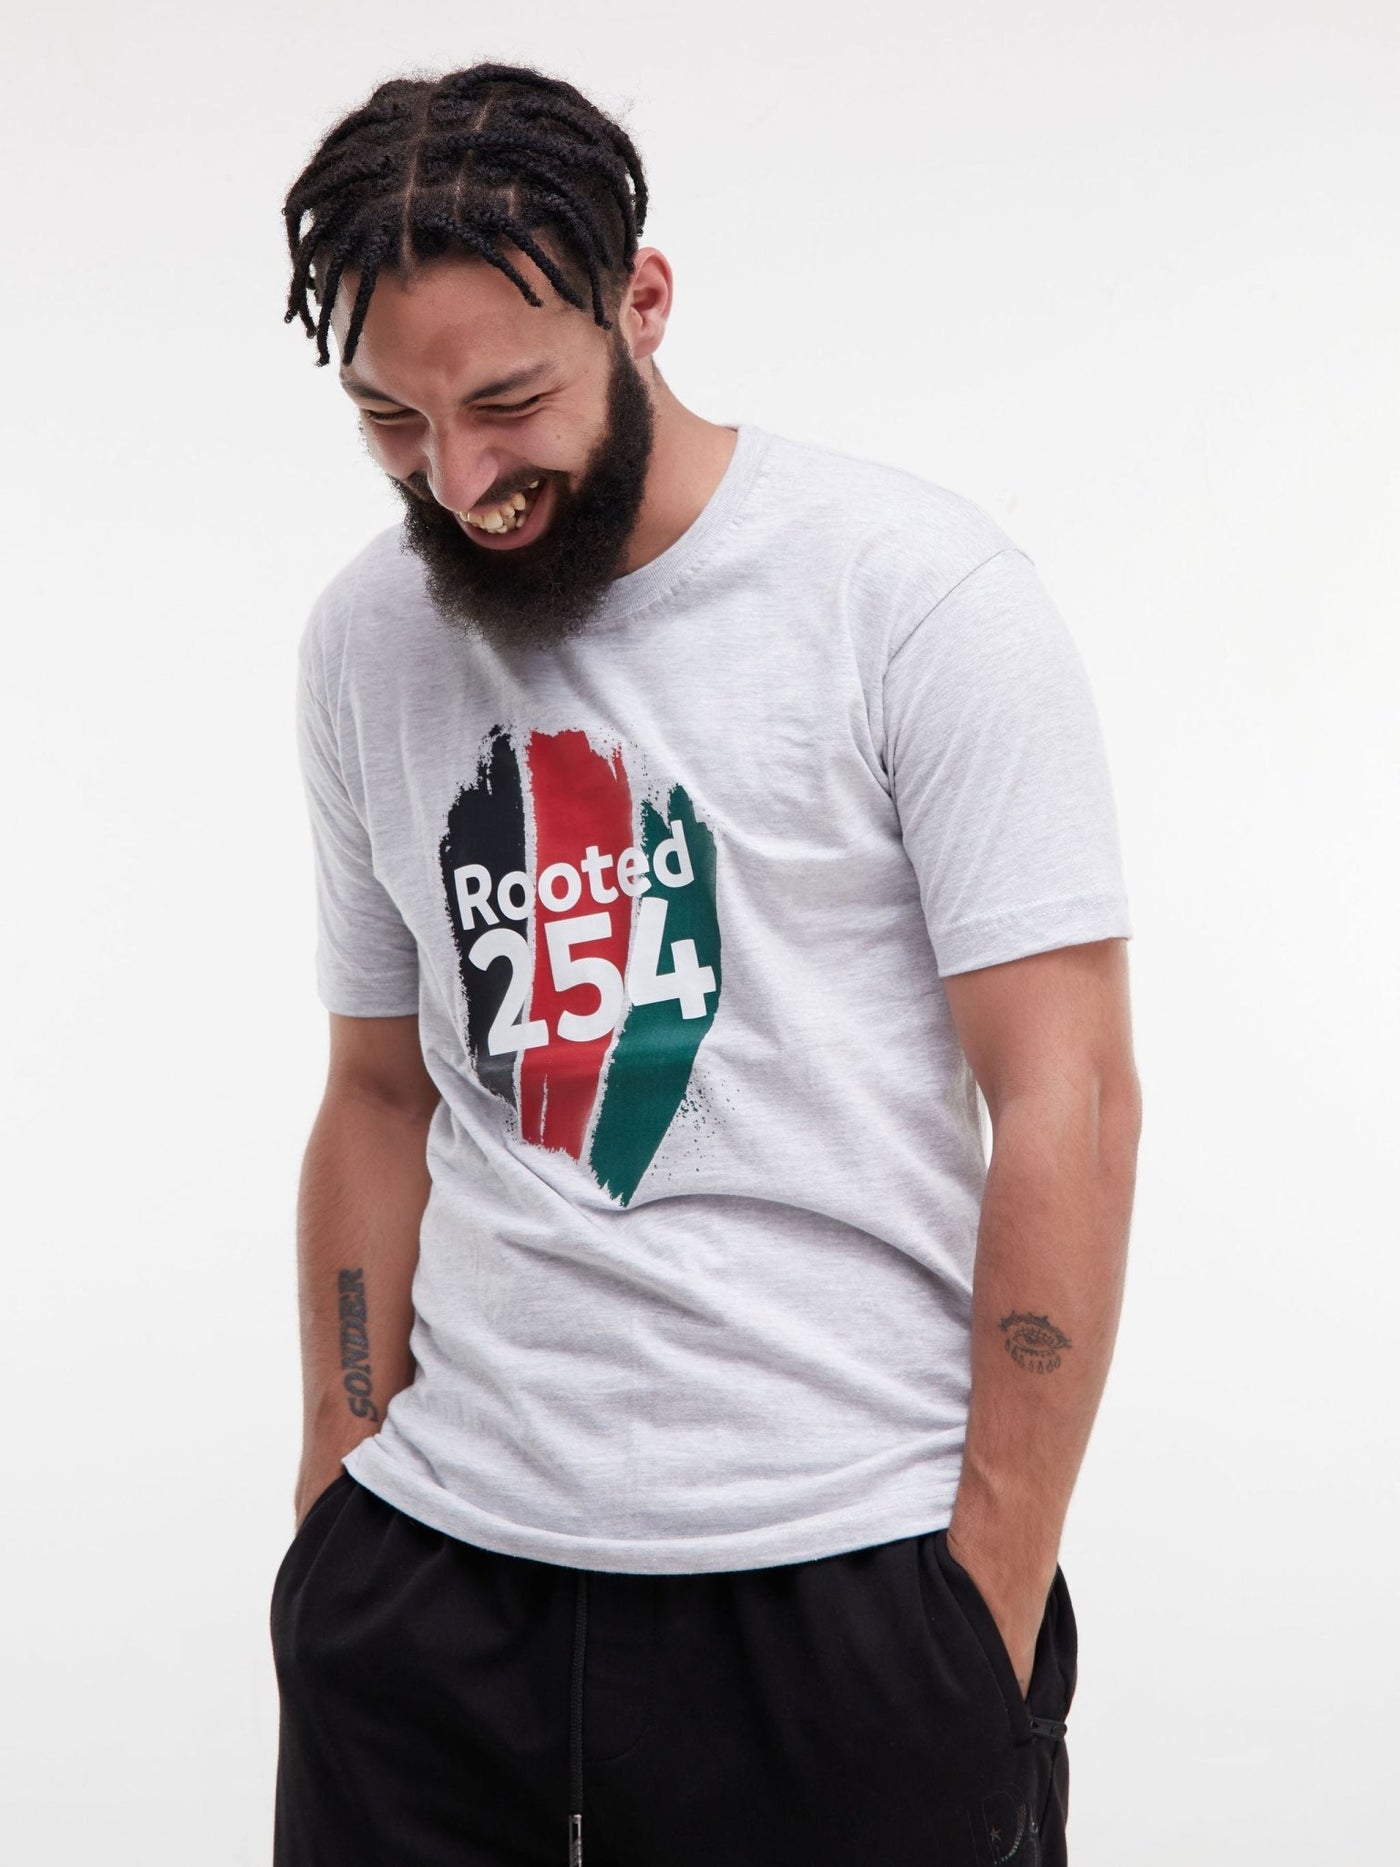 Rooted +254 Short Sleeved T-Shirt - Grey - Shop Zetu Kenya